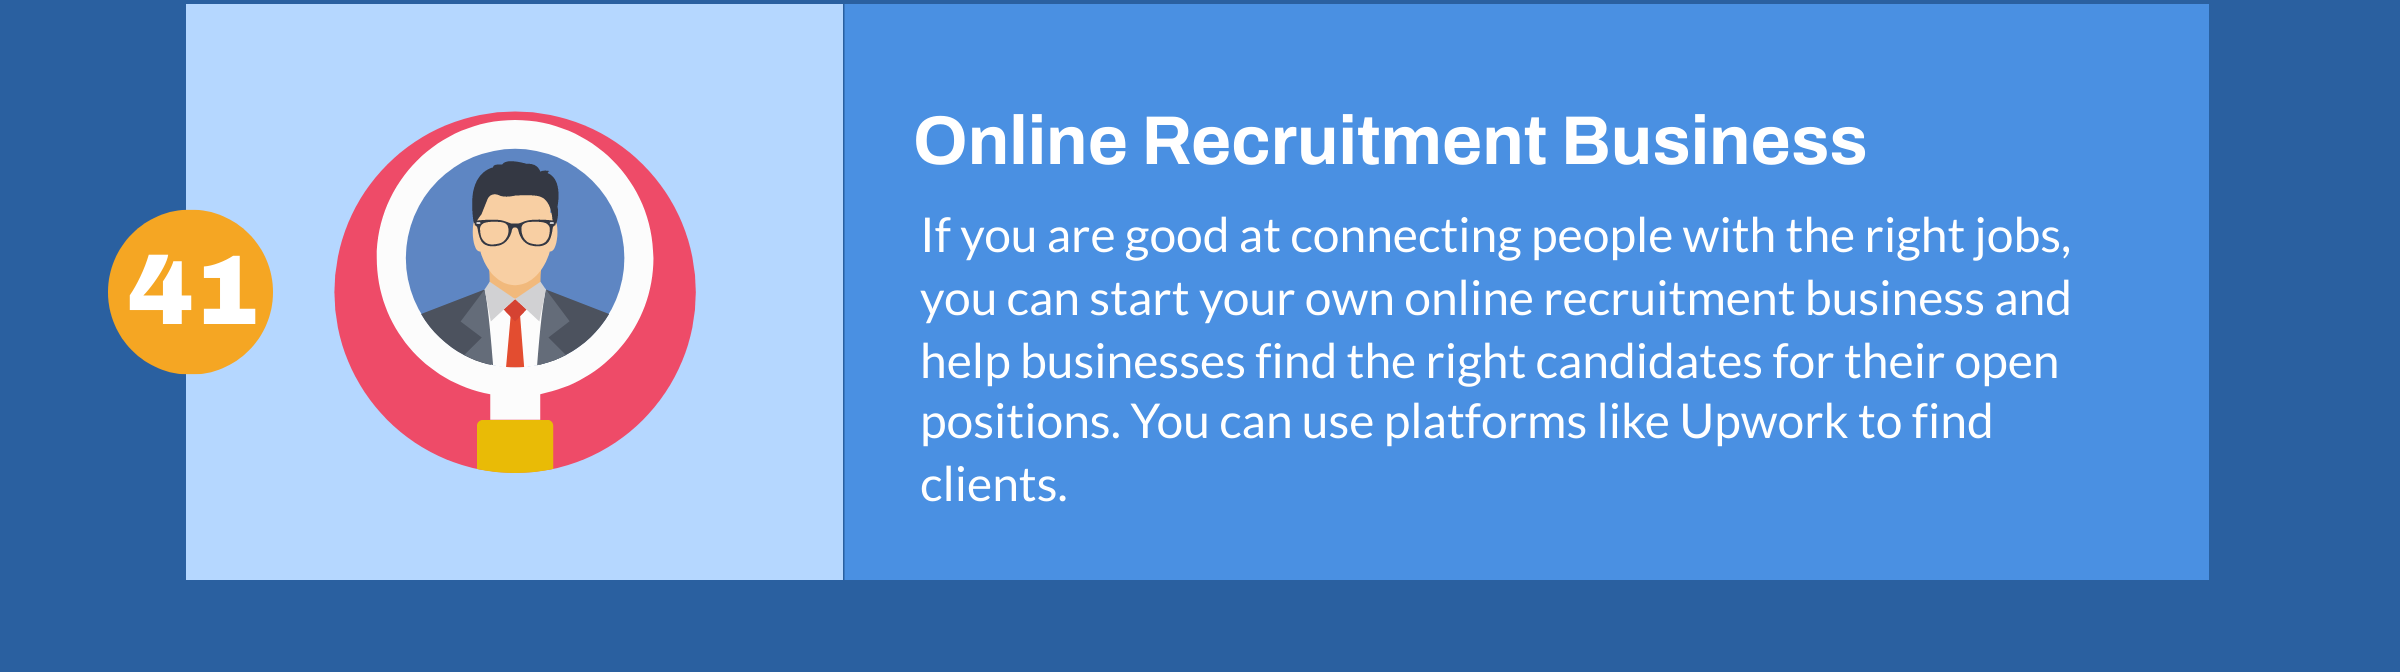 Online Recruitment Business